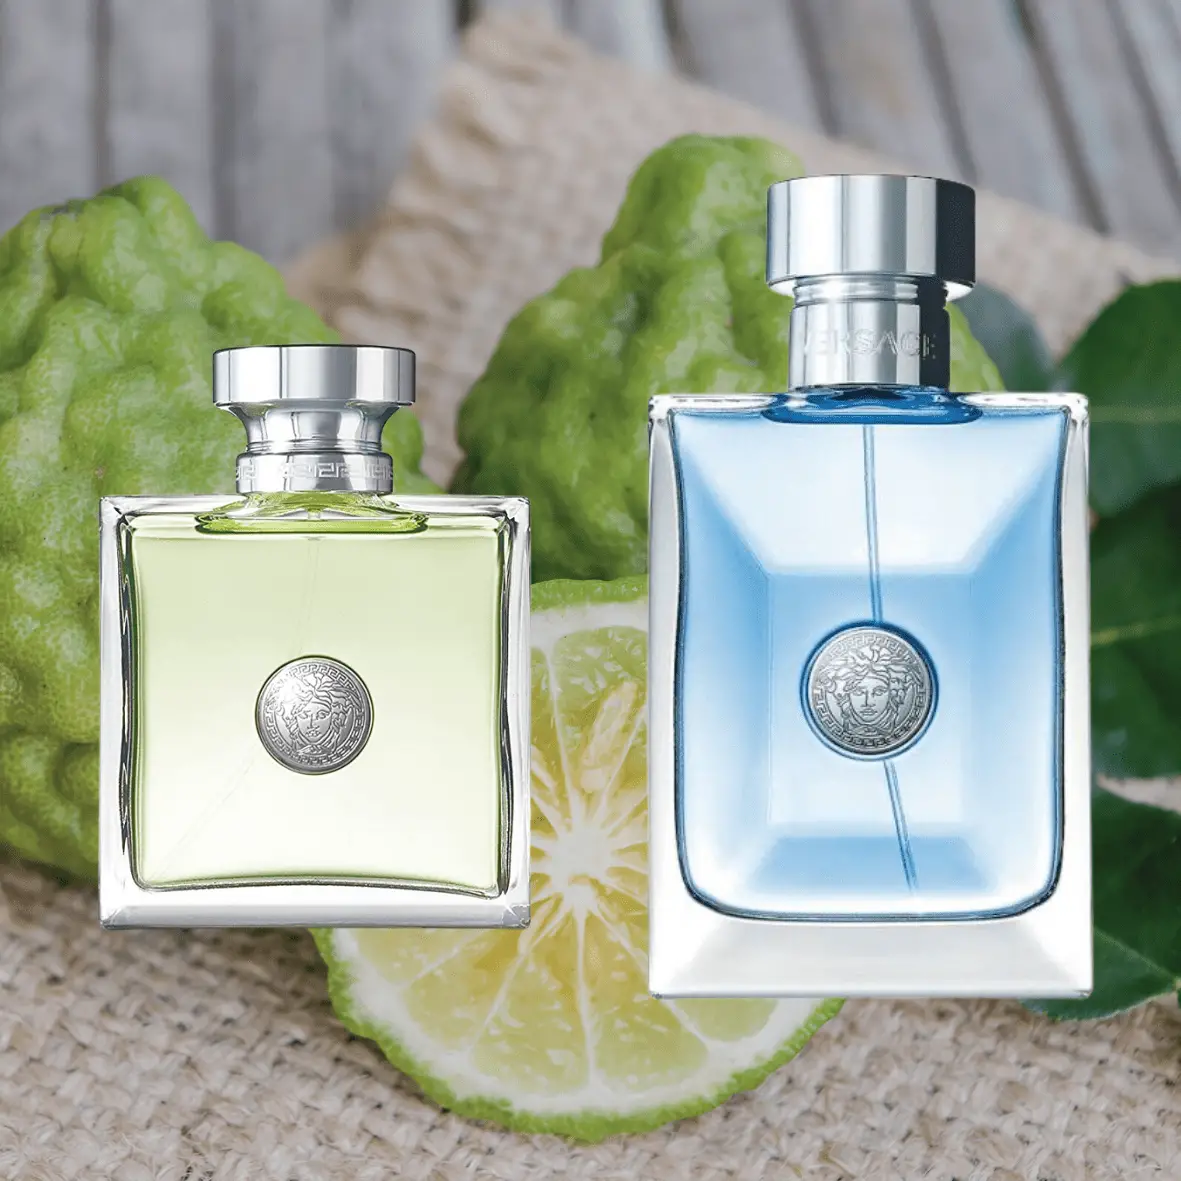 Best Bergamot Fragrances For Men & Women
Versace Versense Pour Femme & Pour Homme